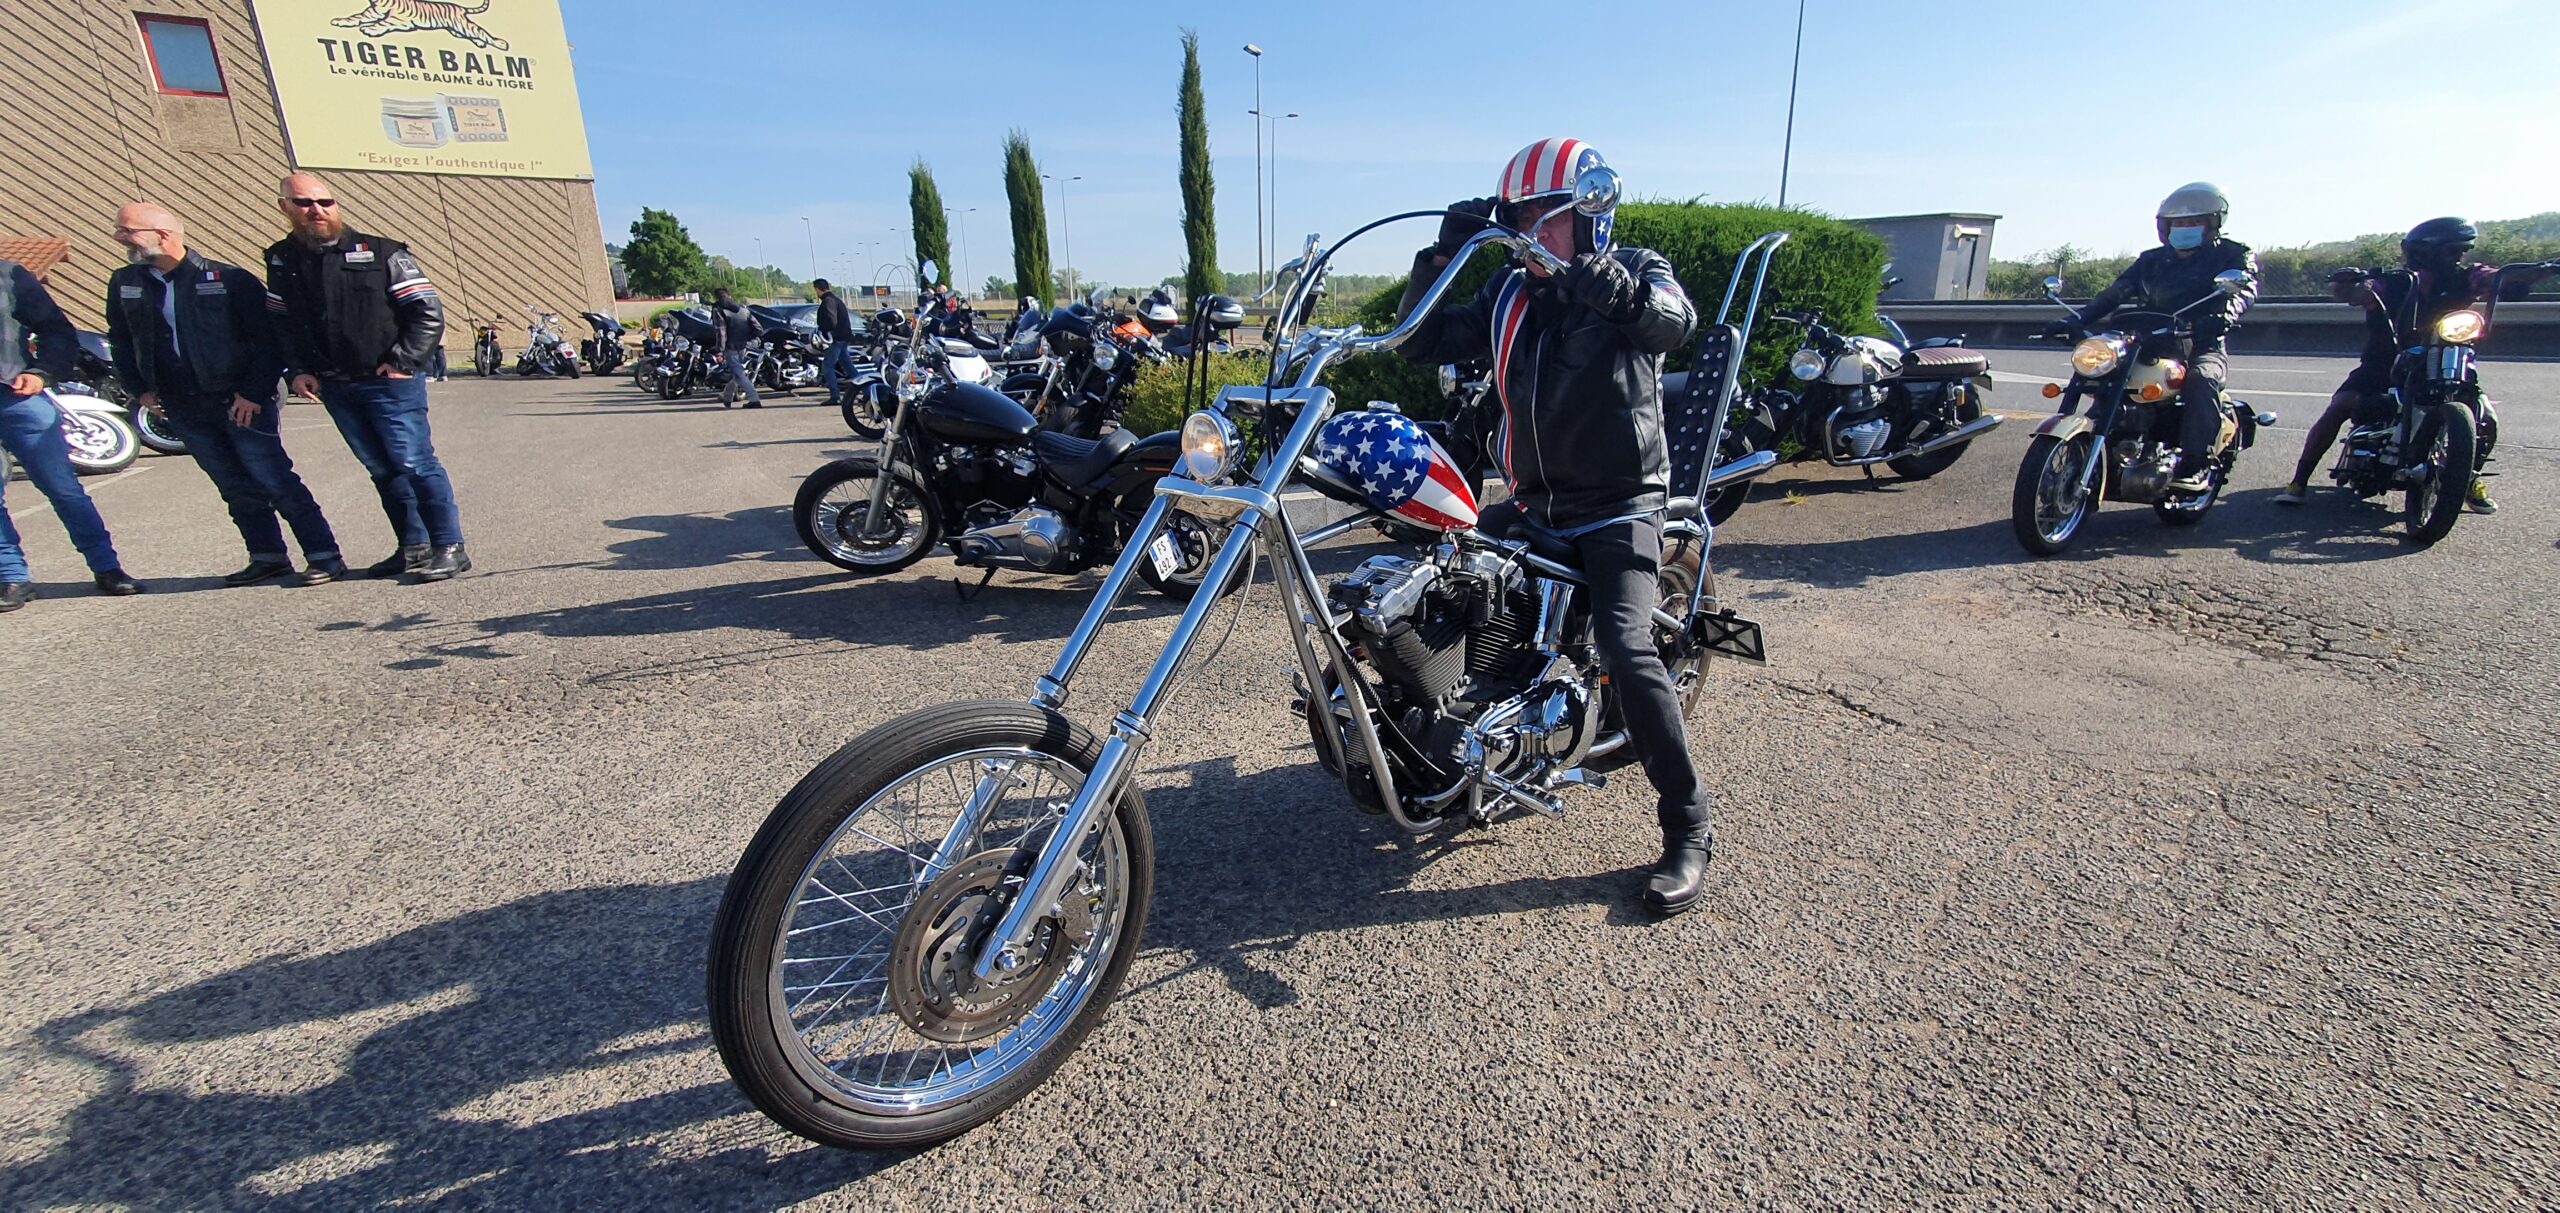 Dimanche 15 mai 2022, KS Motorcycles organisait une balade motos dans le beaujolais pour fêter ses 10 ans d'existence. Photos by MMK.